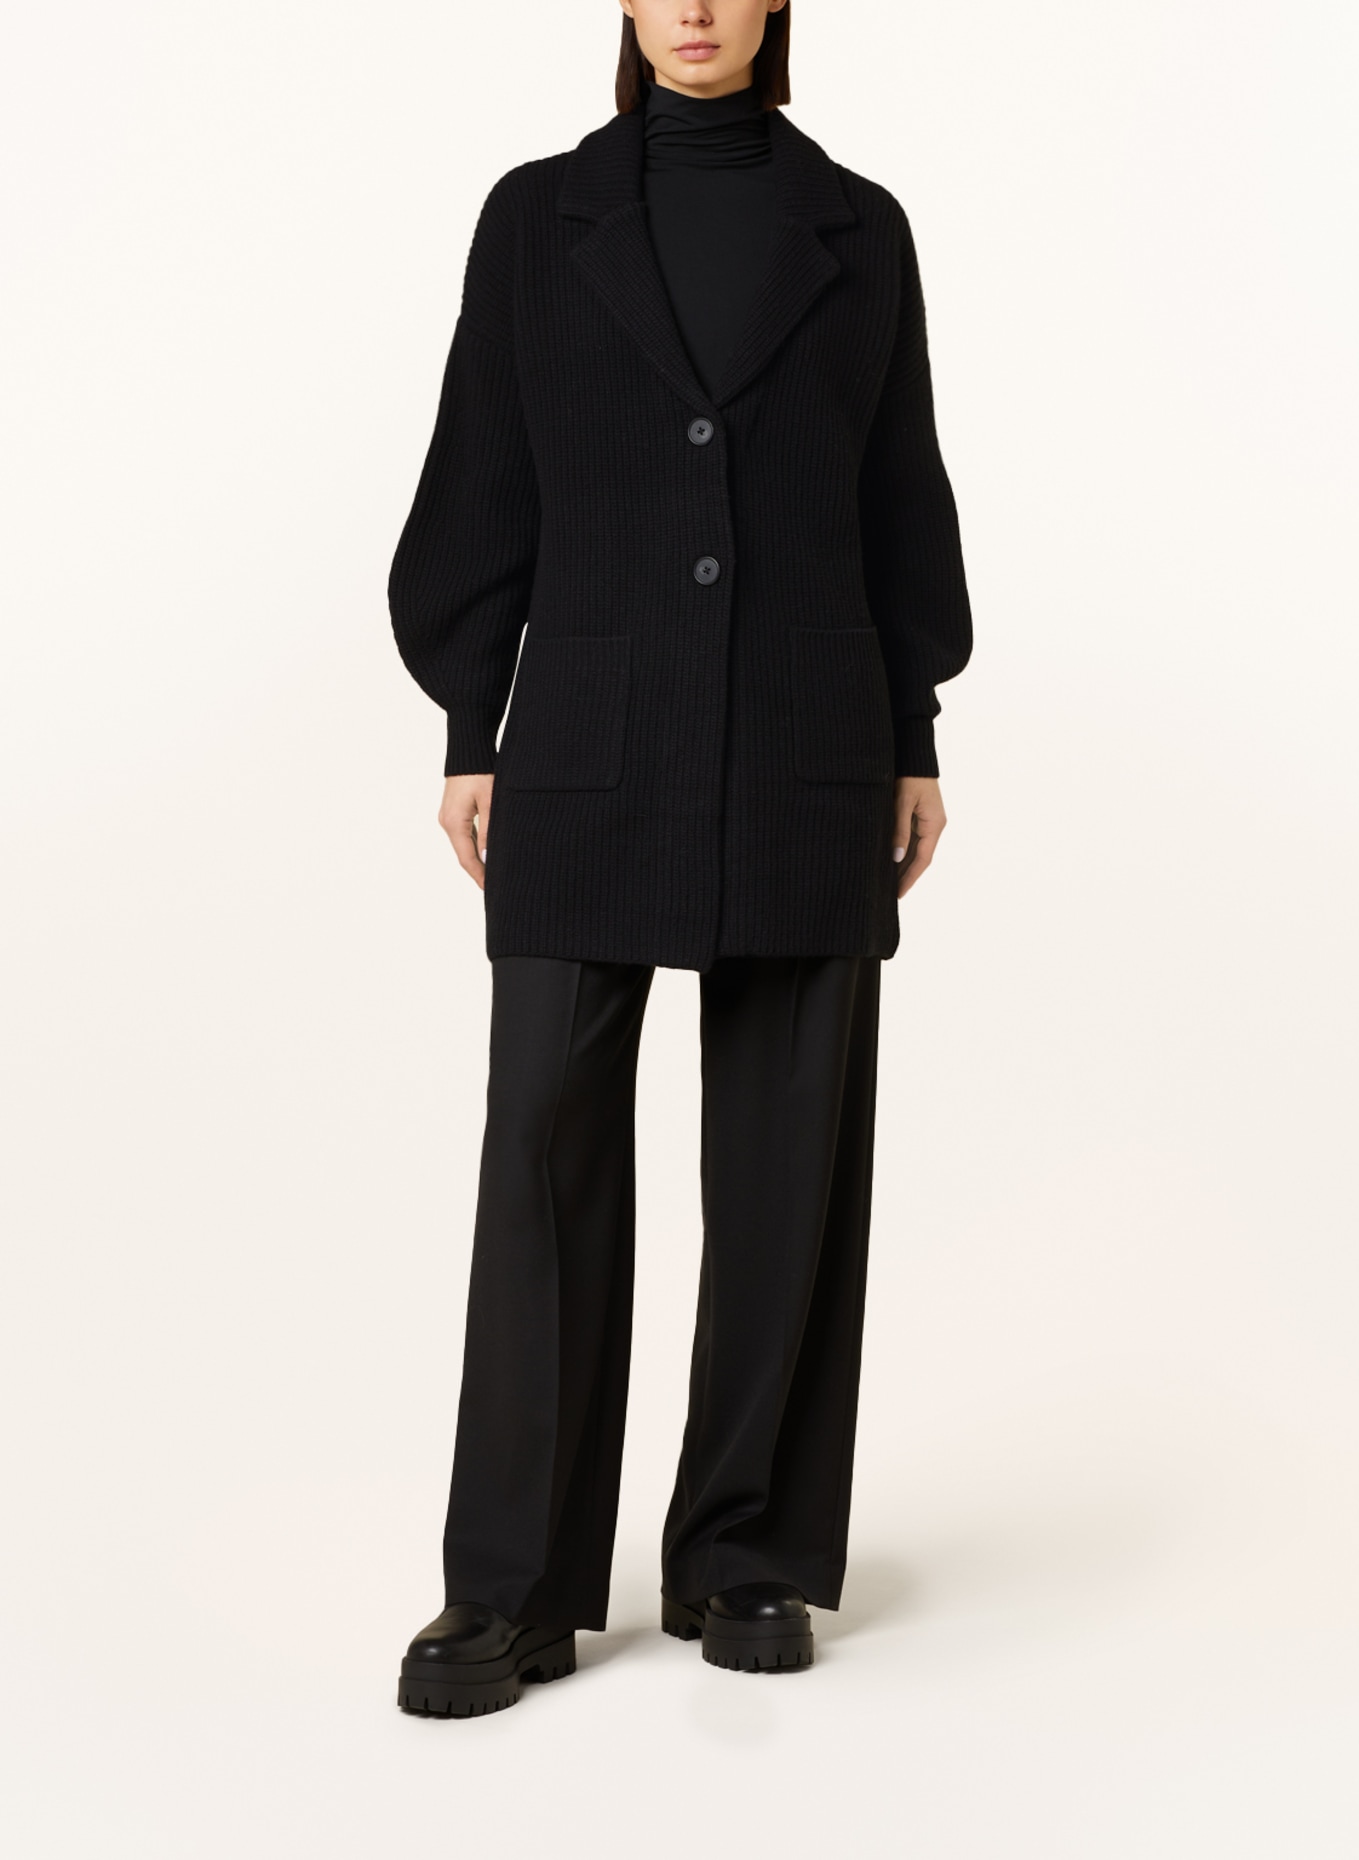 REPEAT Cardigan in merino wool, Color: BLACK (Image 2)